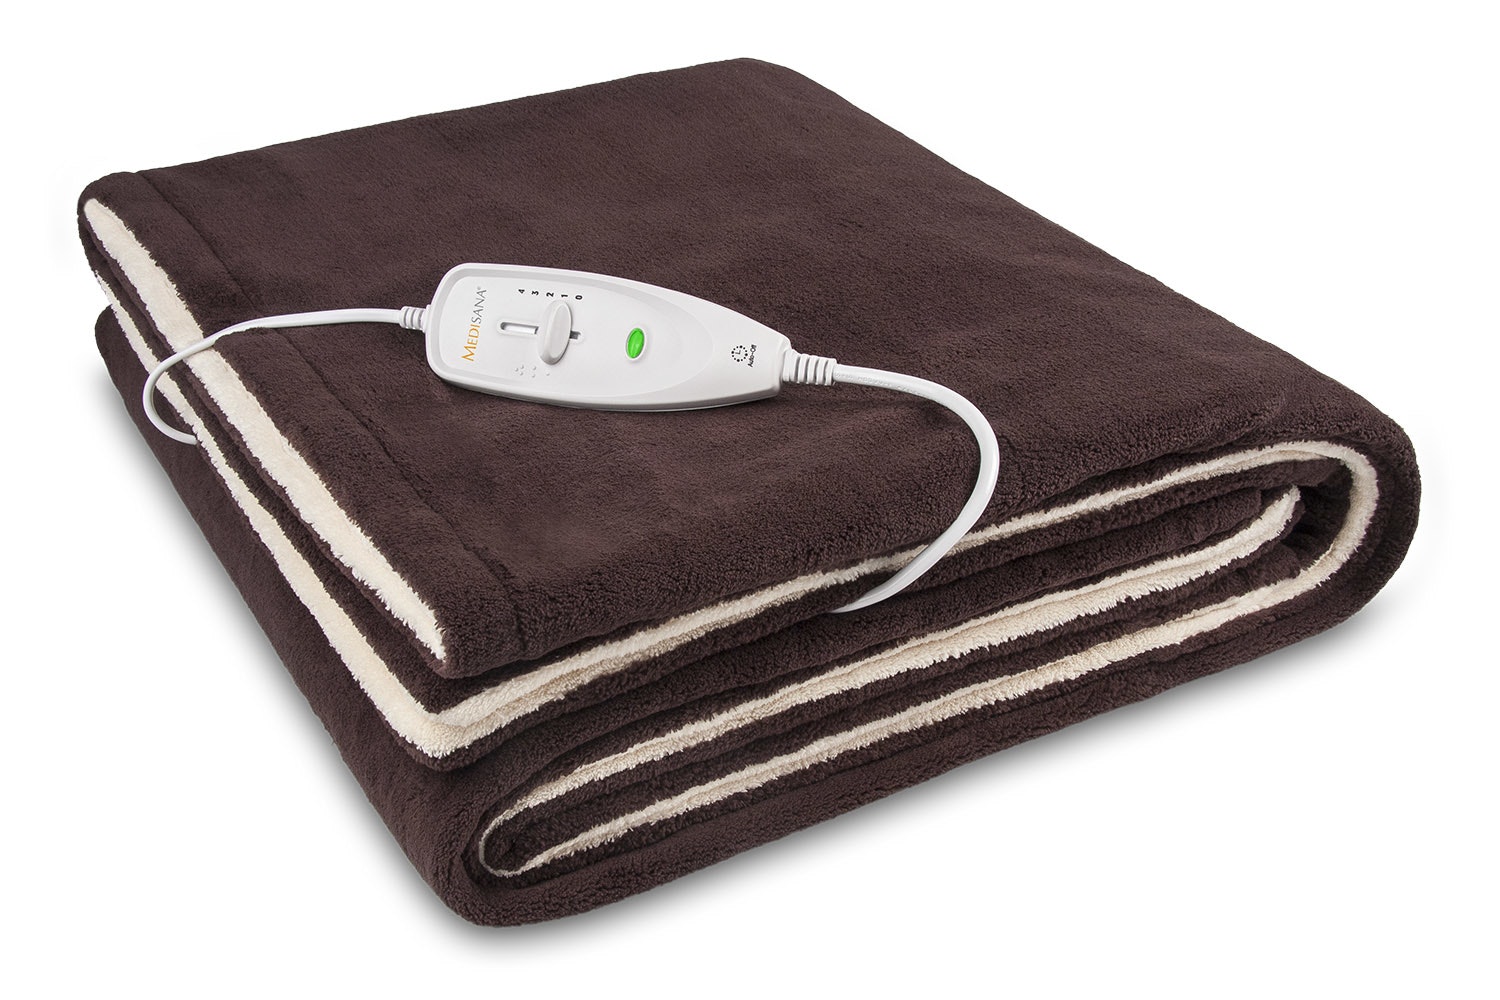 Manta Medisana Hdw 60227 potencia 120w 4 niveles sistema de seguridad calienta camas y lavable almohadillas 120